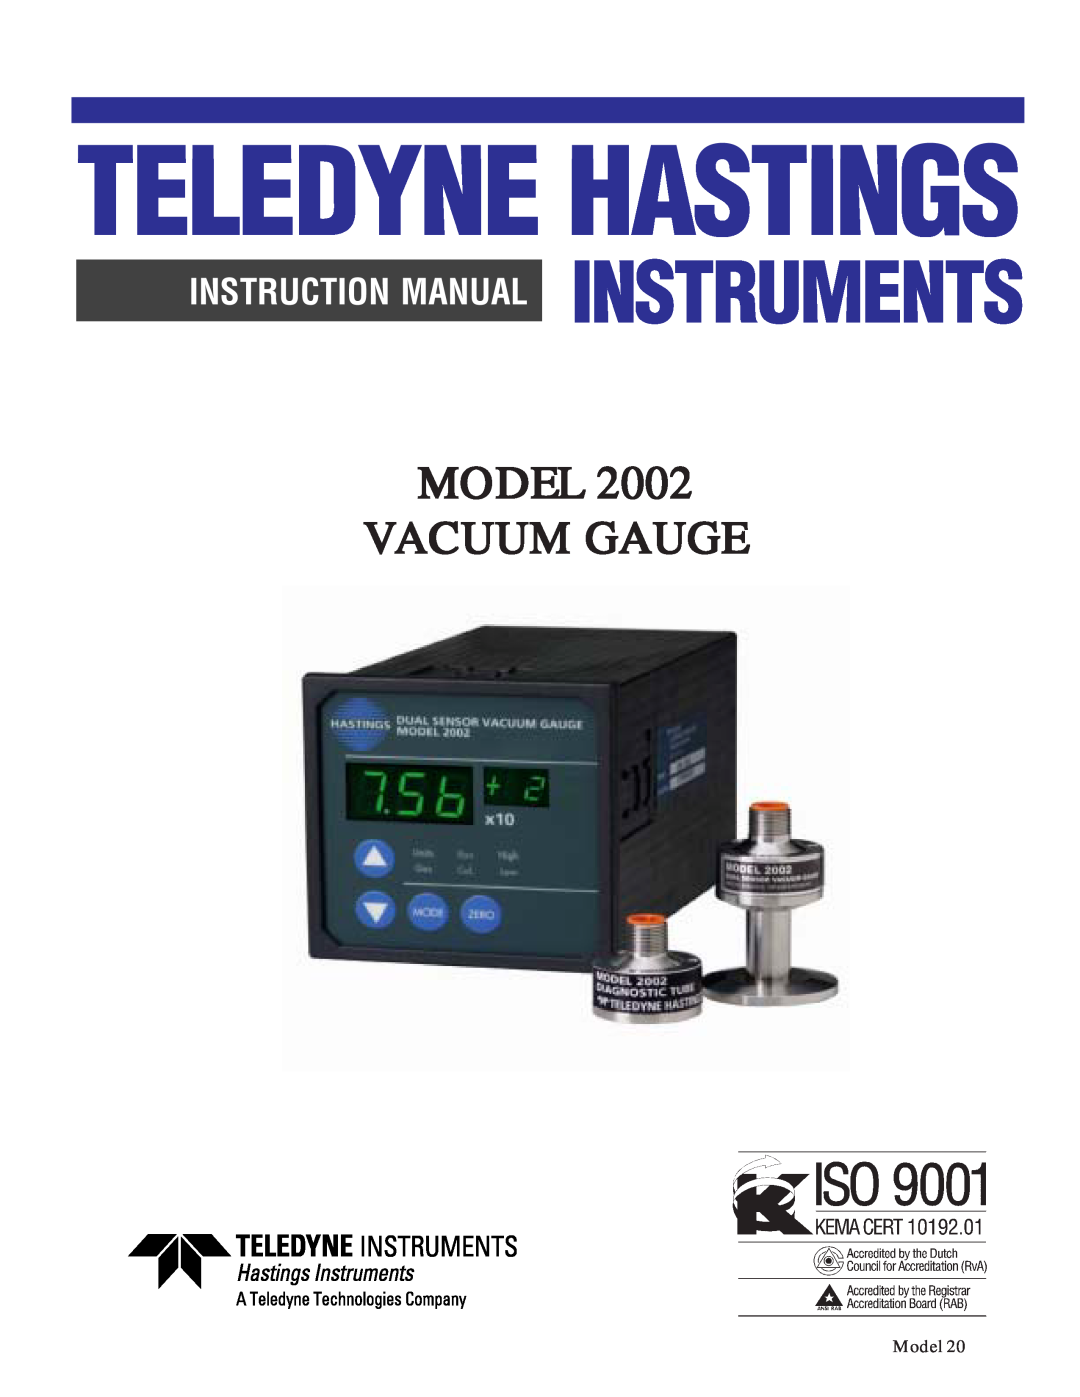 Teledyne 2002 instruction manual Teledyne Hastings, Instruments, Model Vacuum Gauge 